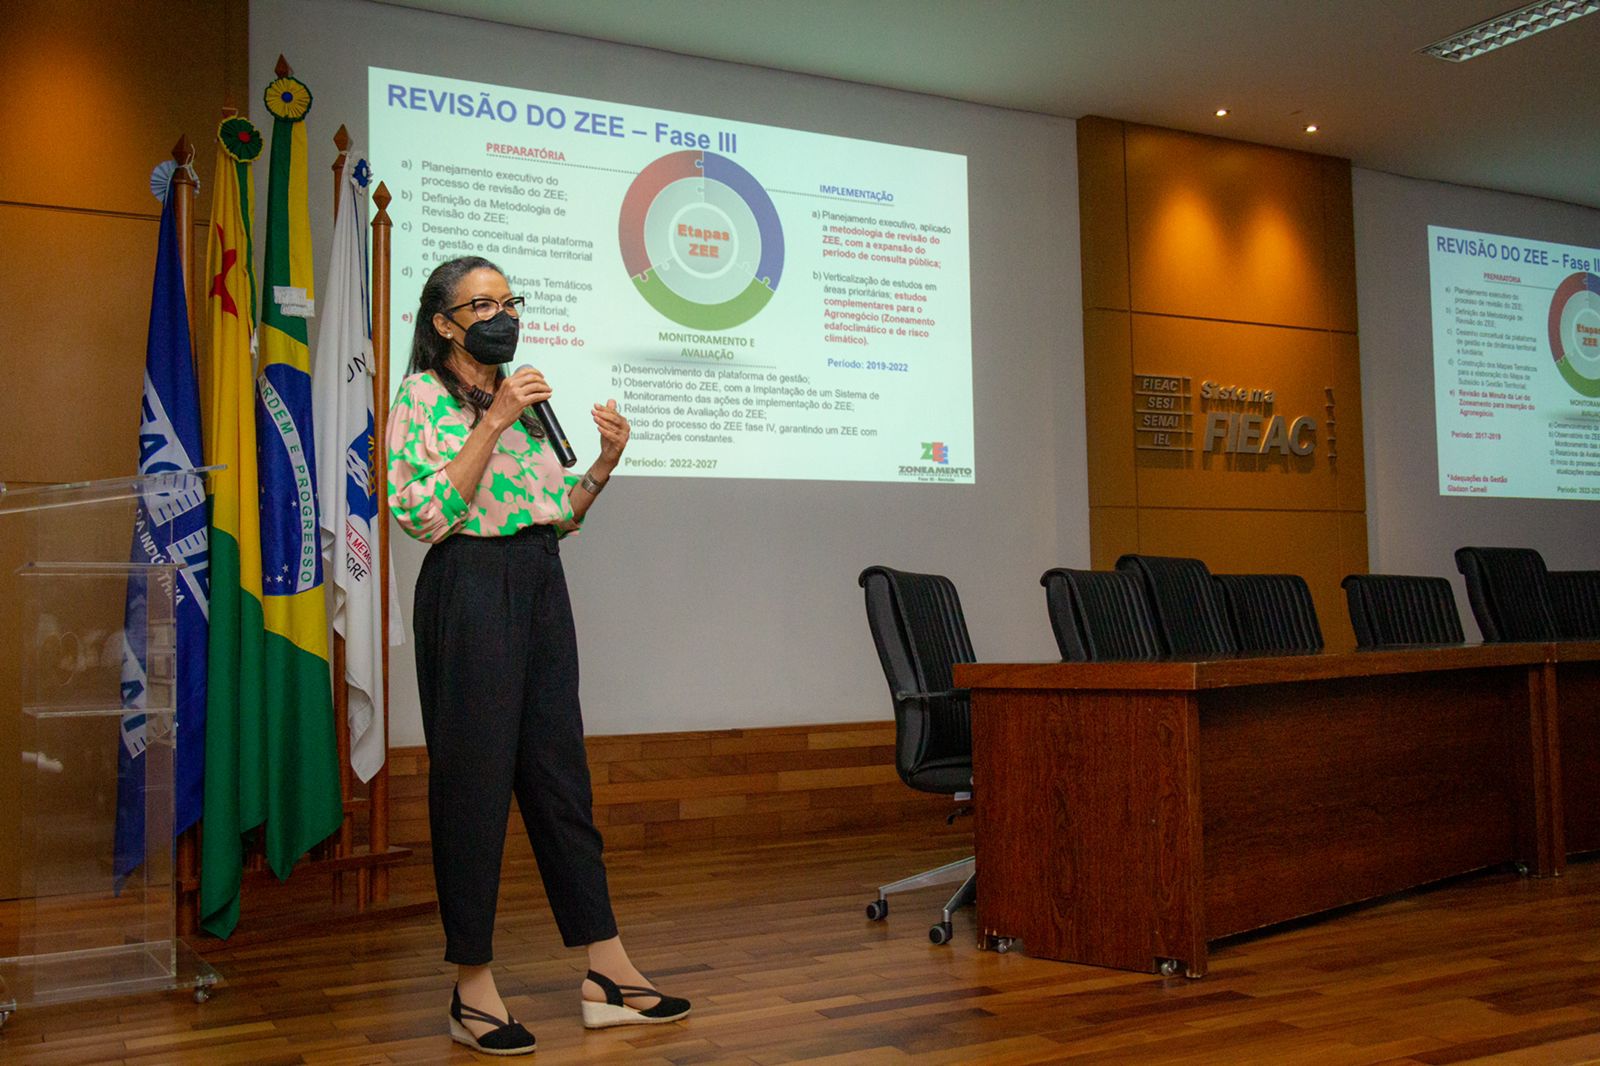 Lançamento ZEE Fase III, PgCAR e PCigma. Foto José Caminha/Secom